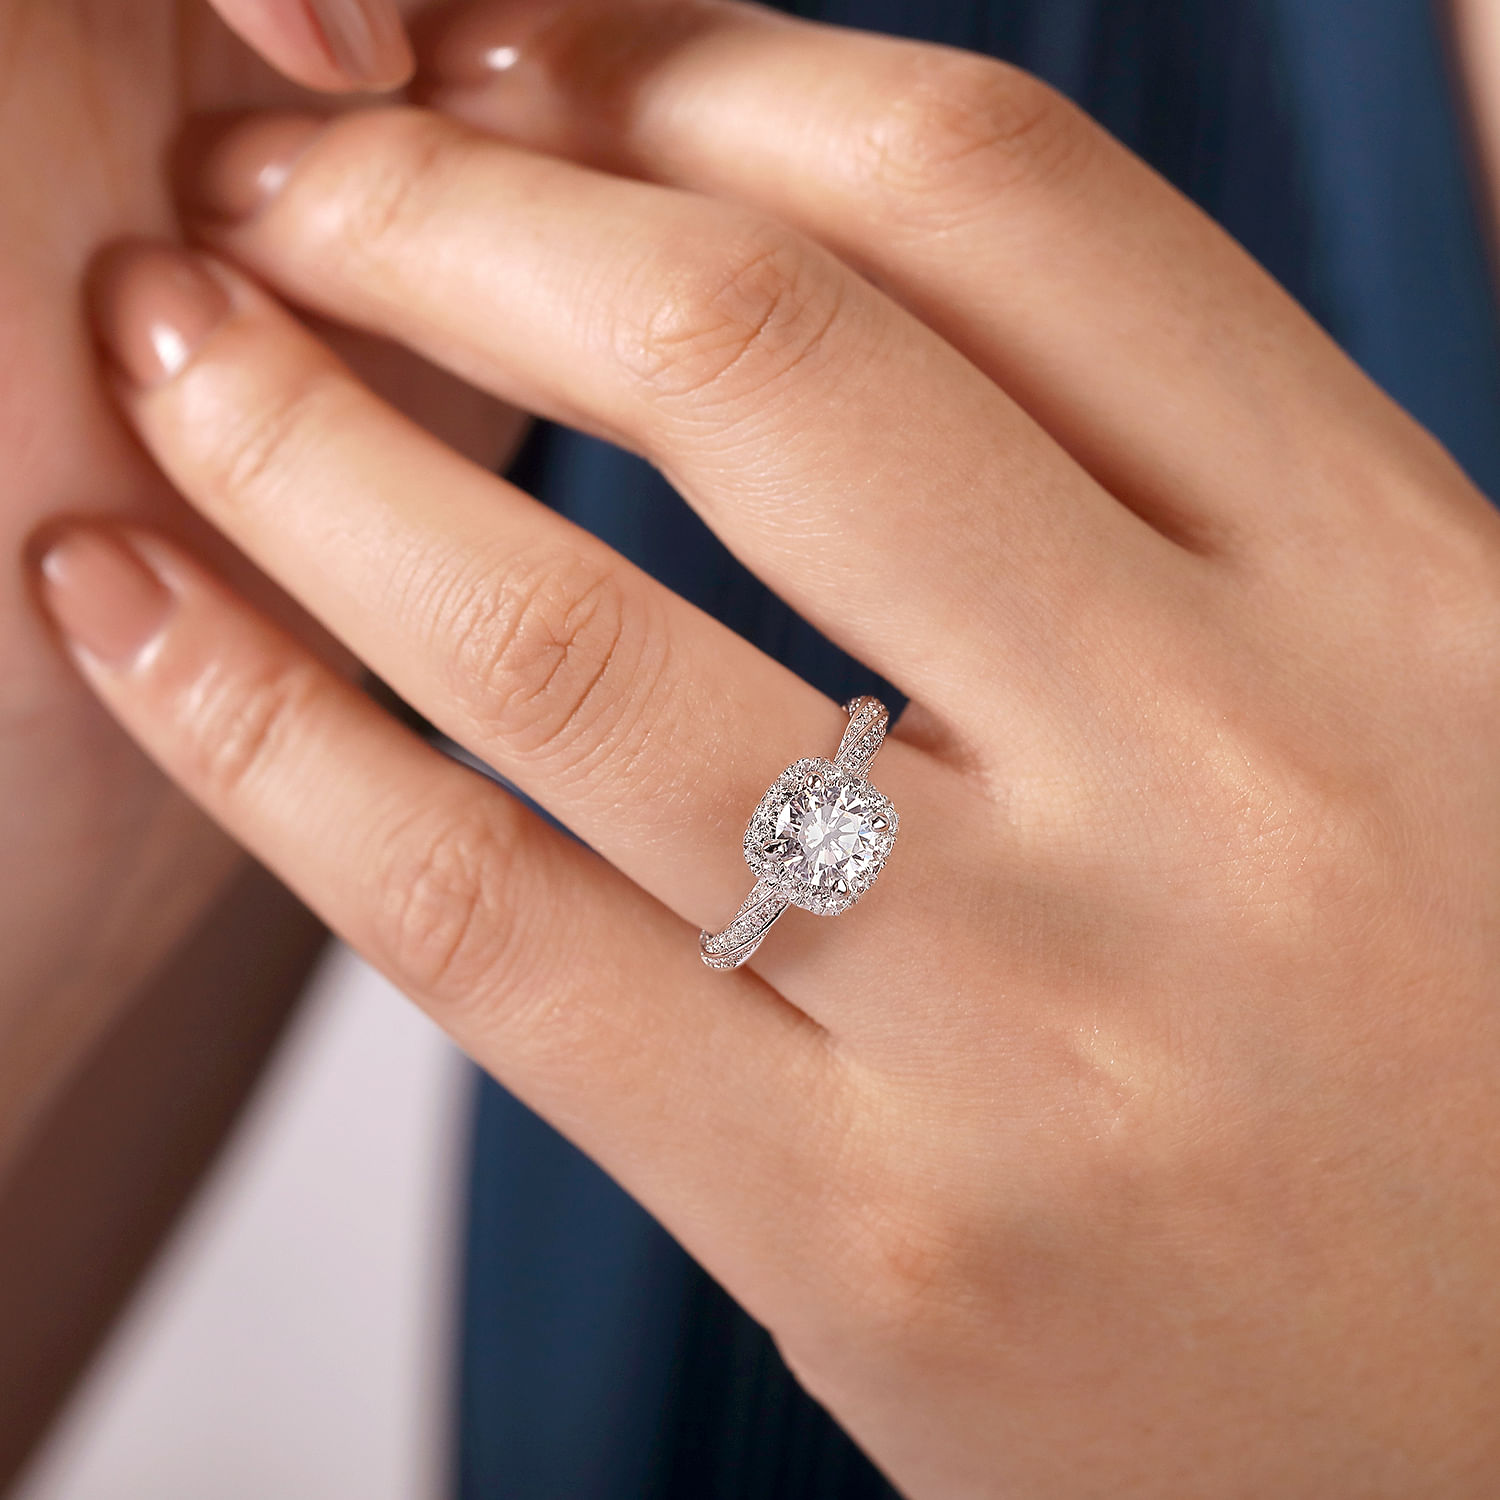 14K White Gold Cushion Halo Round Diamond Engagement Ring